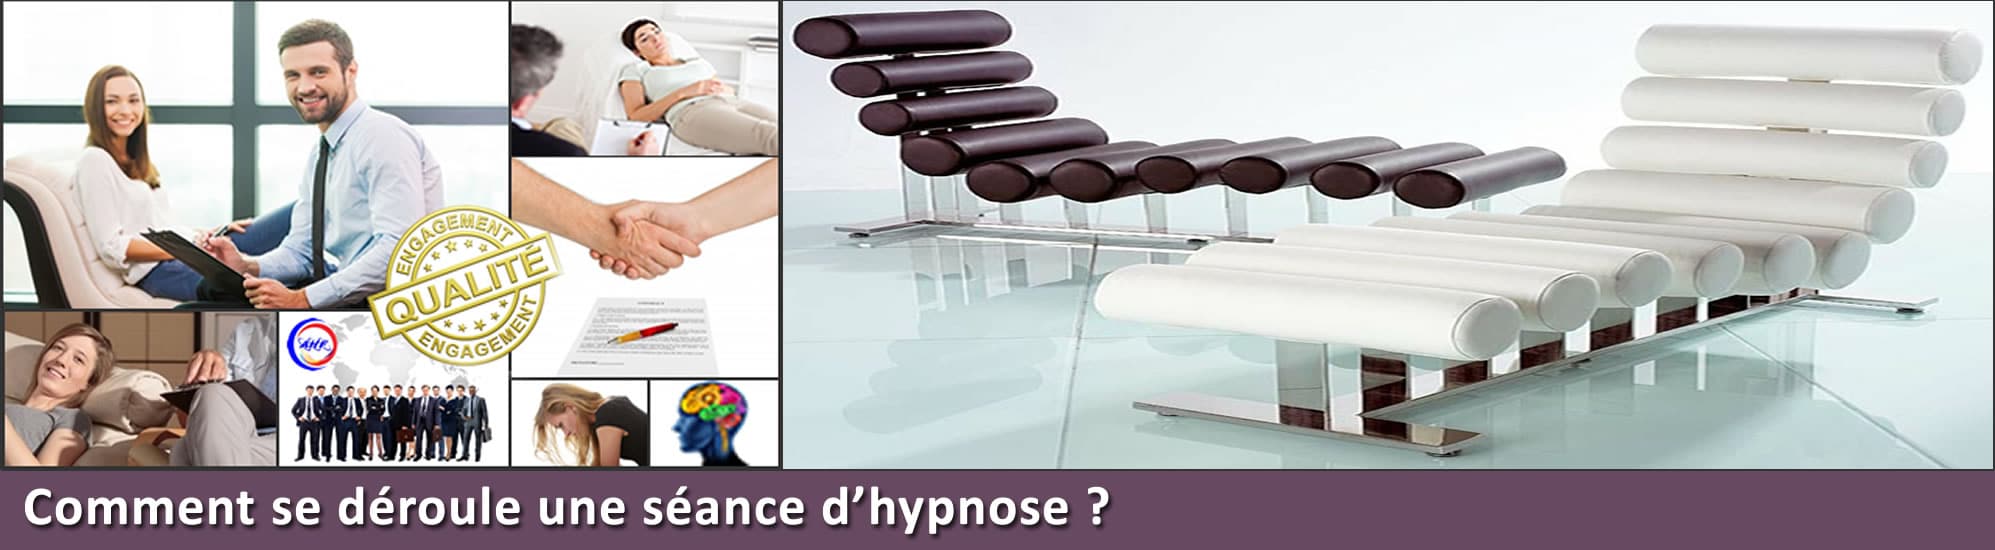 hypnose séance d'hypnose